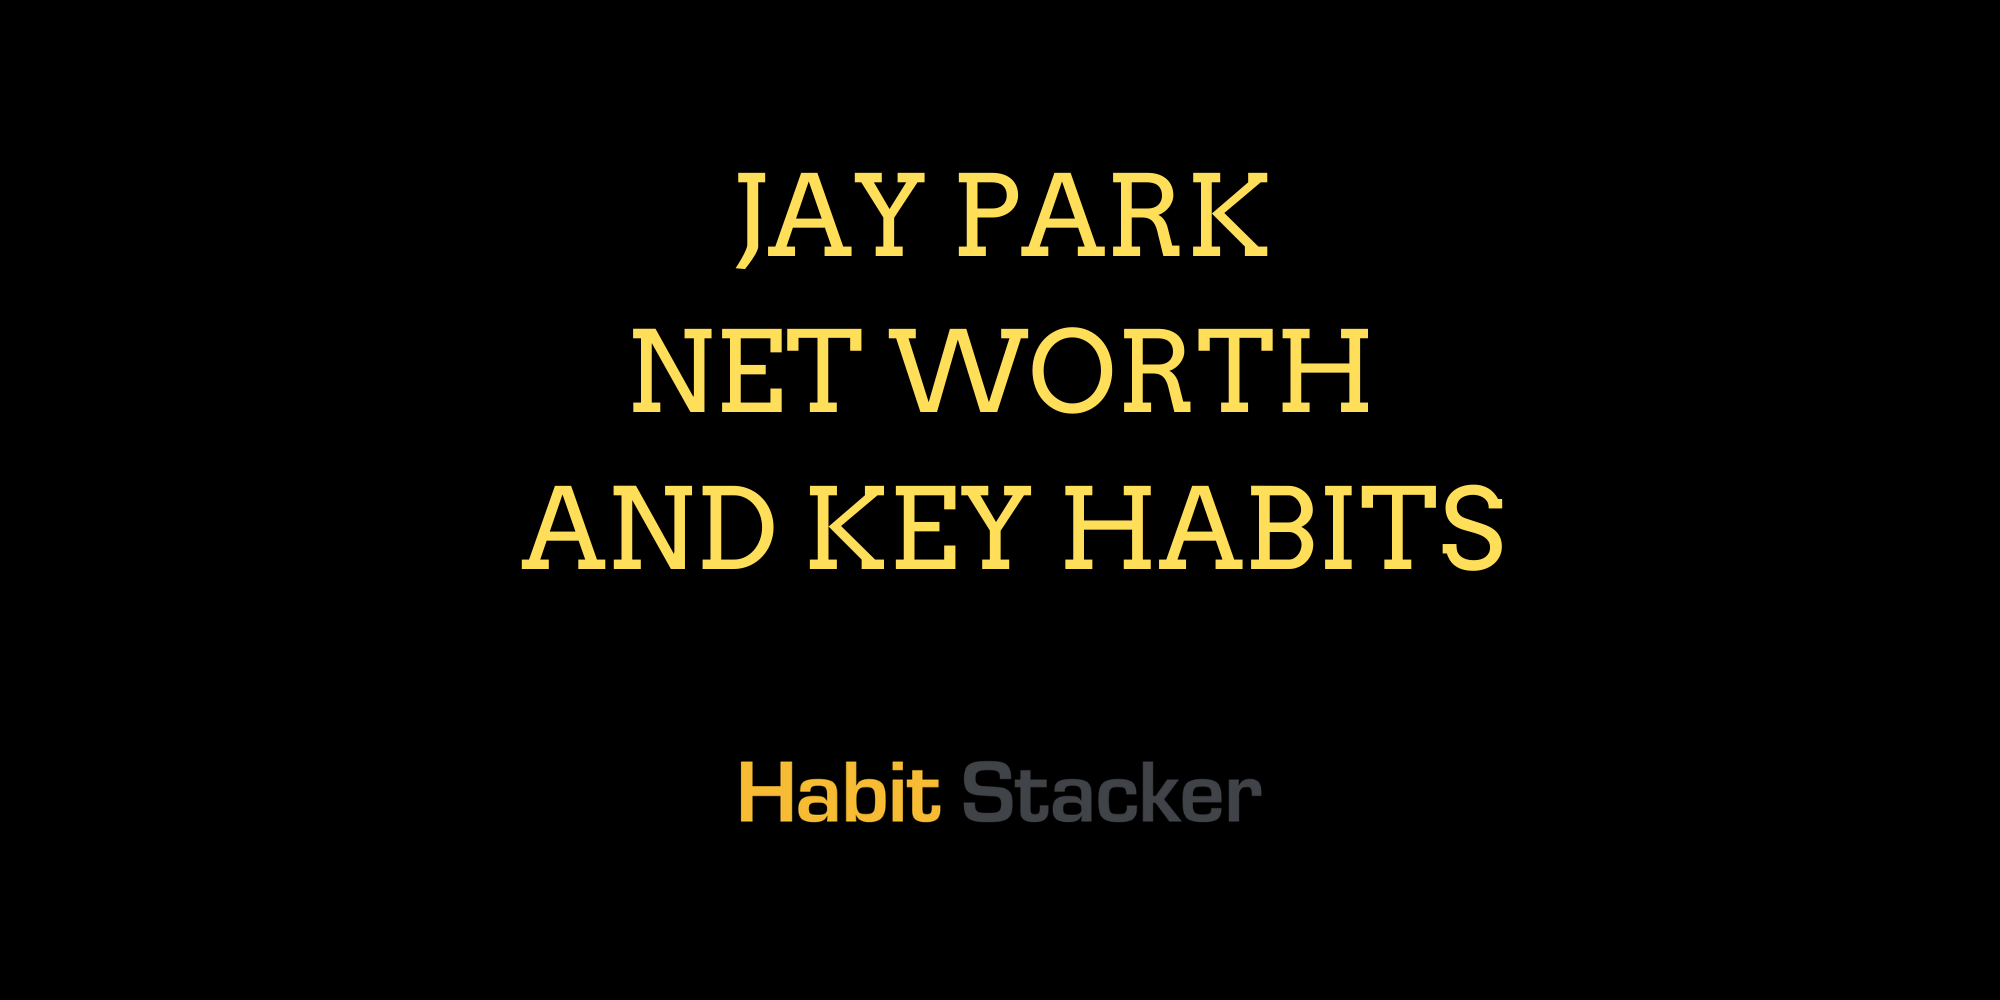 Jay Park Net Worth and Key Habits